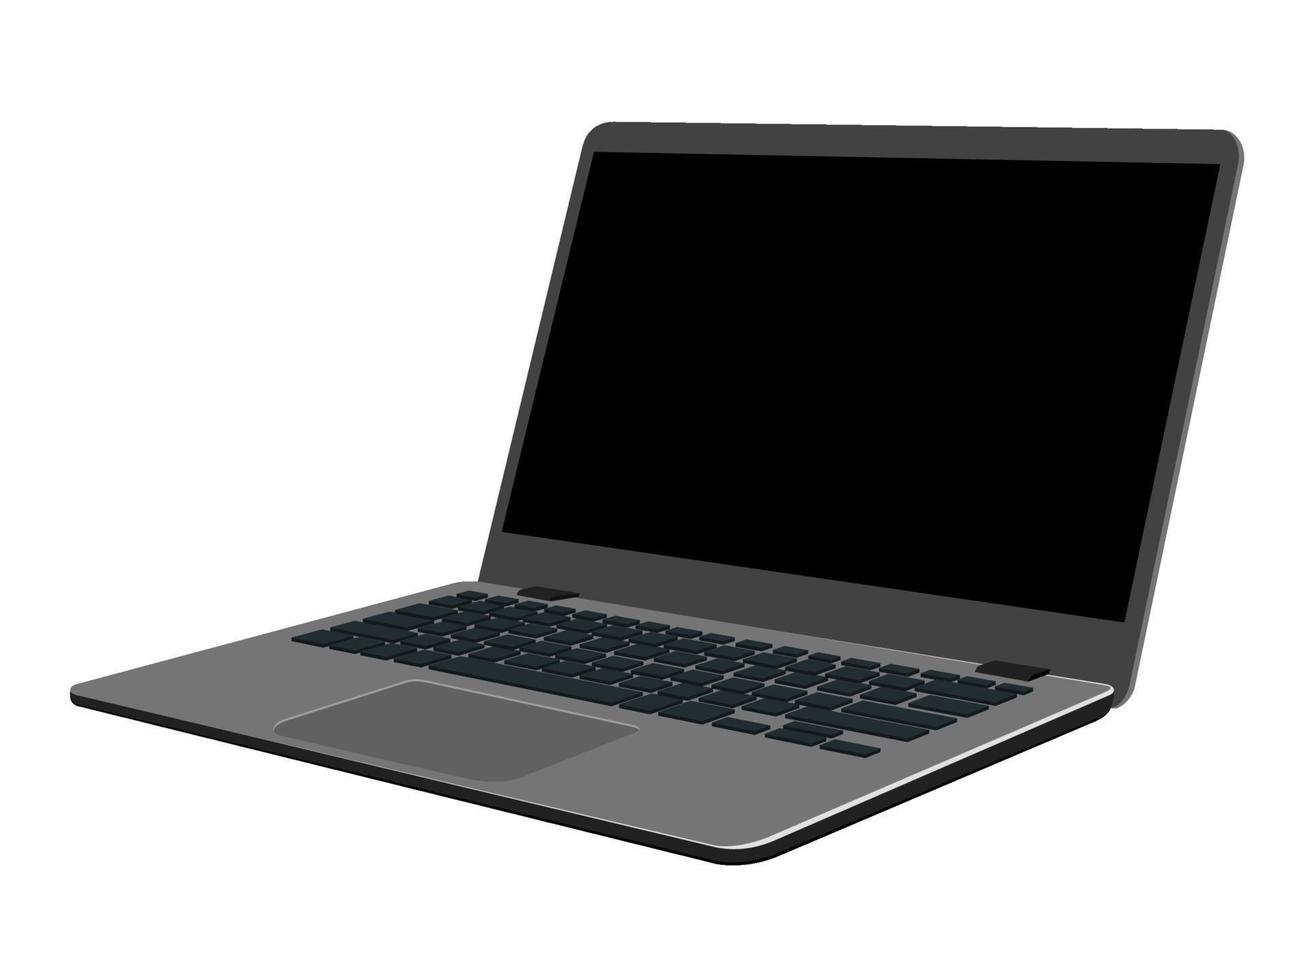 imagem vetorial isométrica de um laptop aberto isolado. cinza desligou o laptop com uma tampa levantada em uma vista em perspectiva. vetor